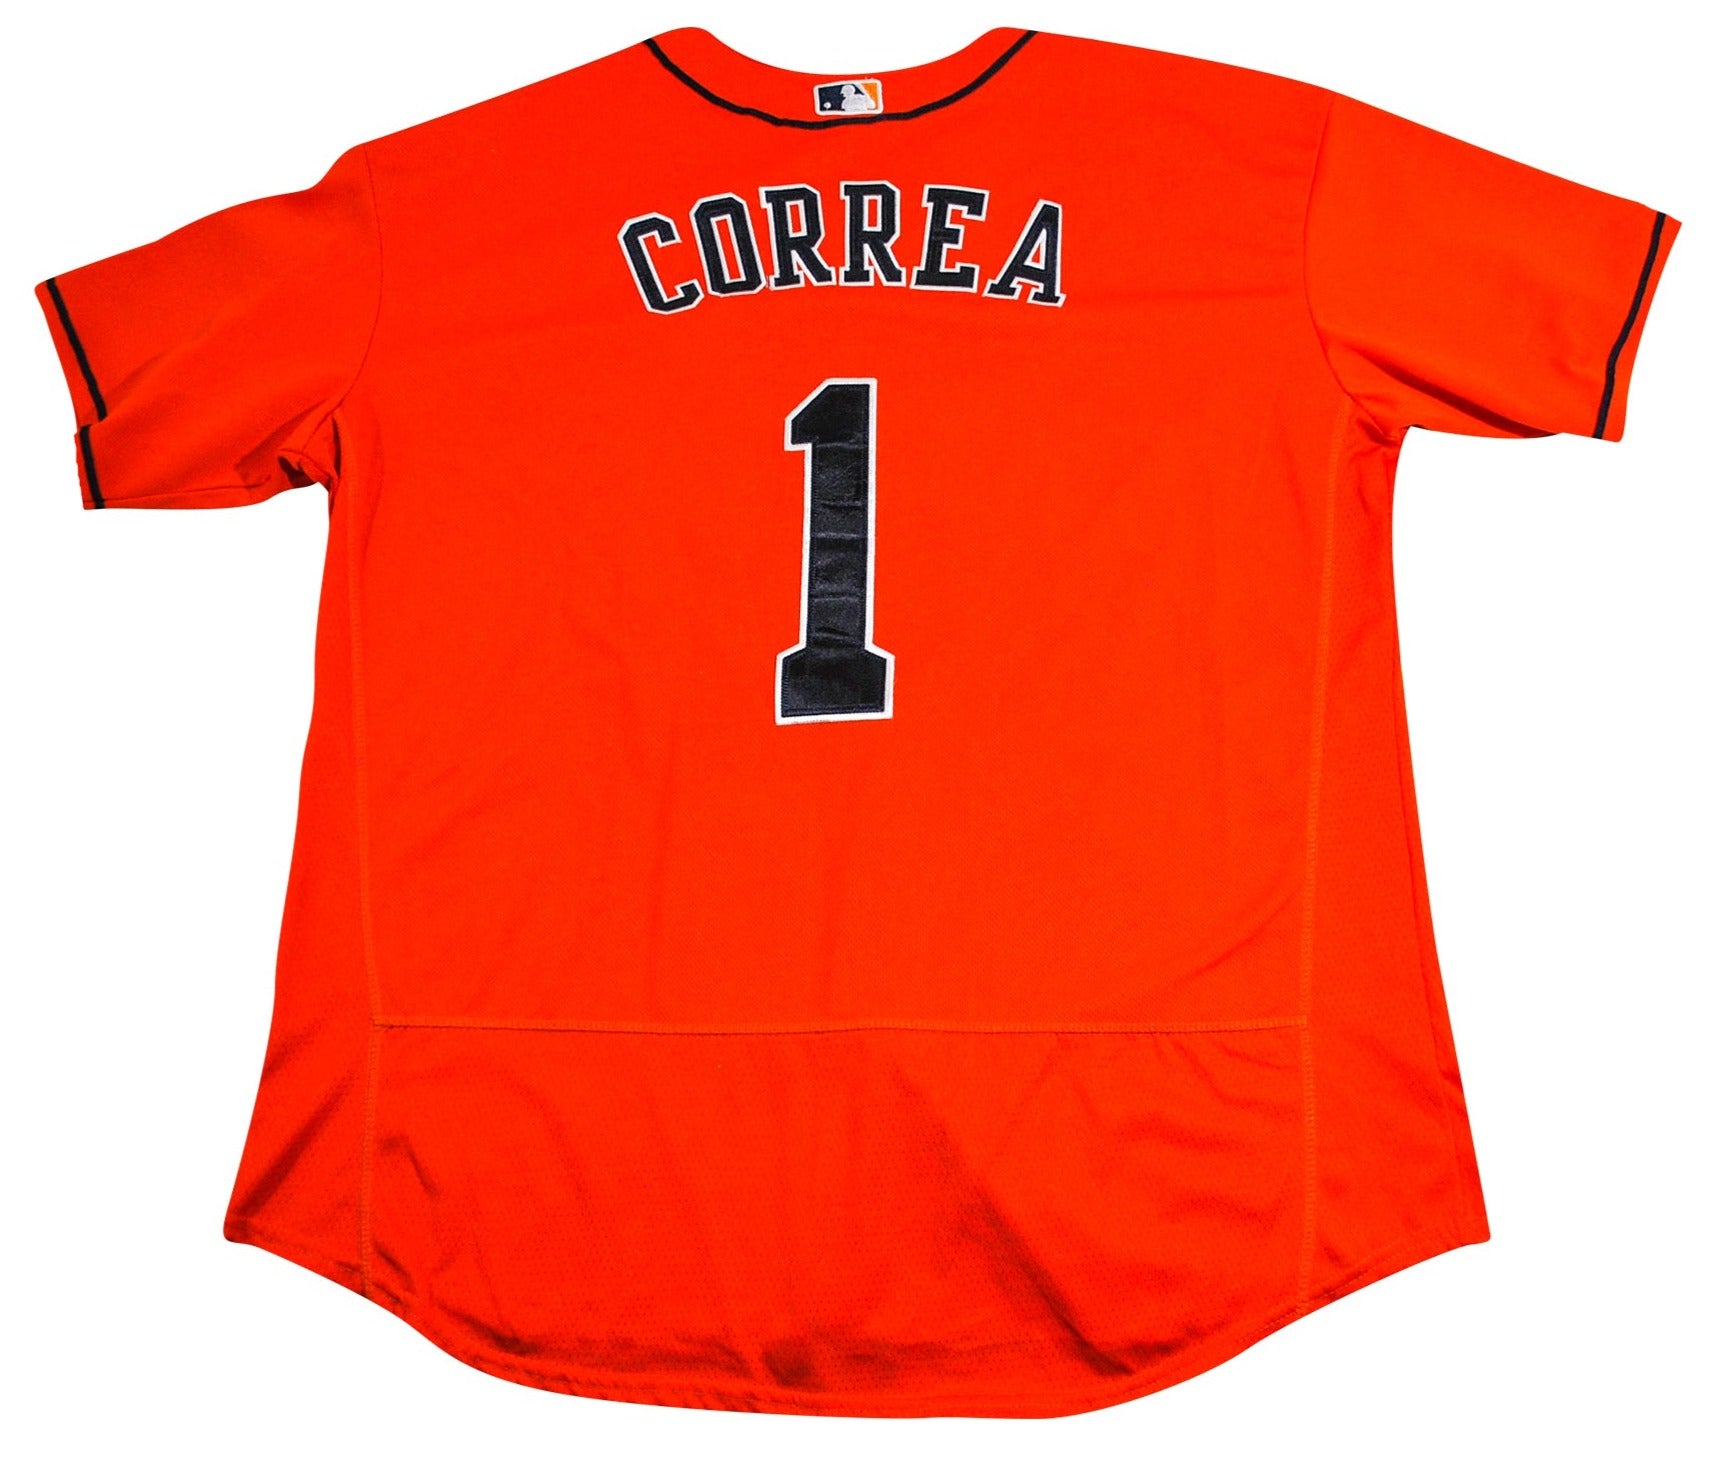 Carlos Correa - Carlos Correa Houston Astros - T-Shirt